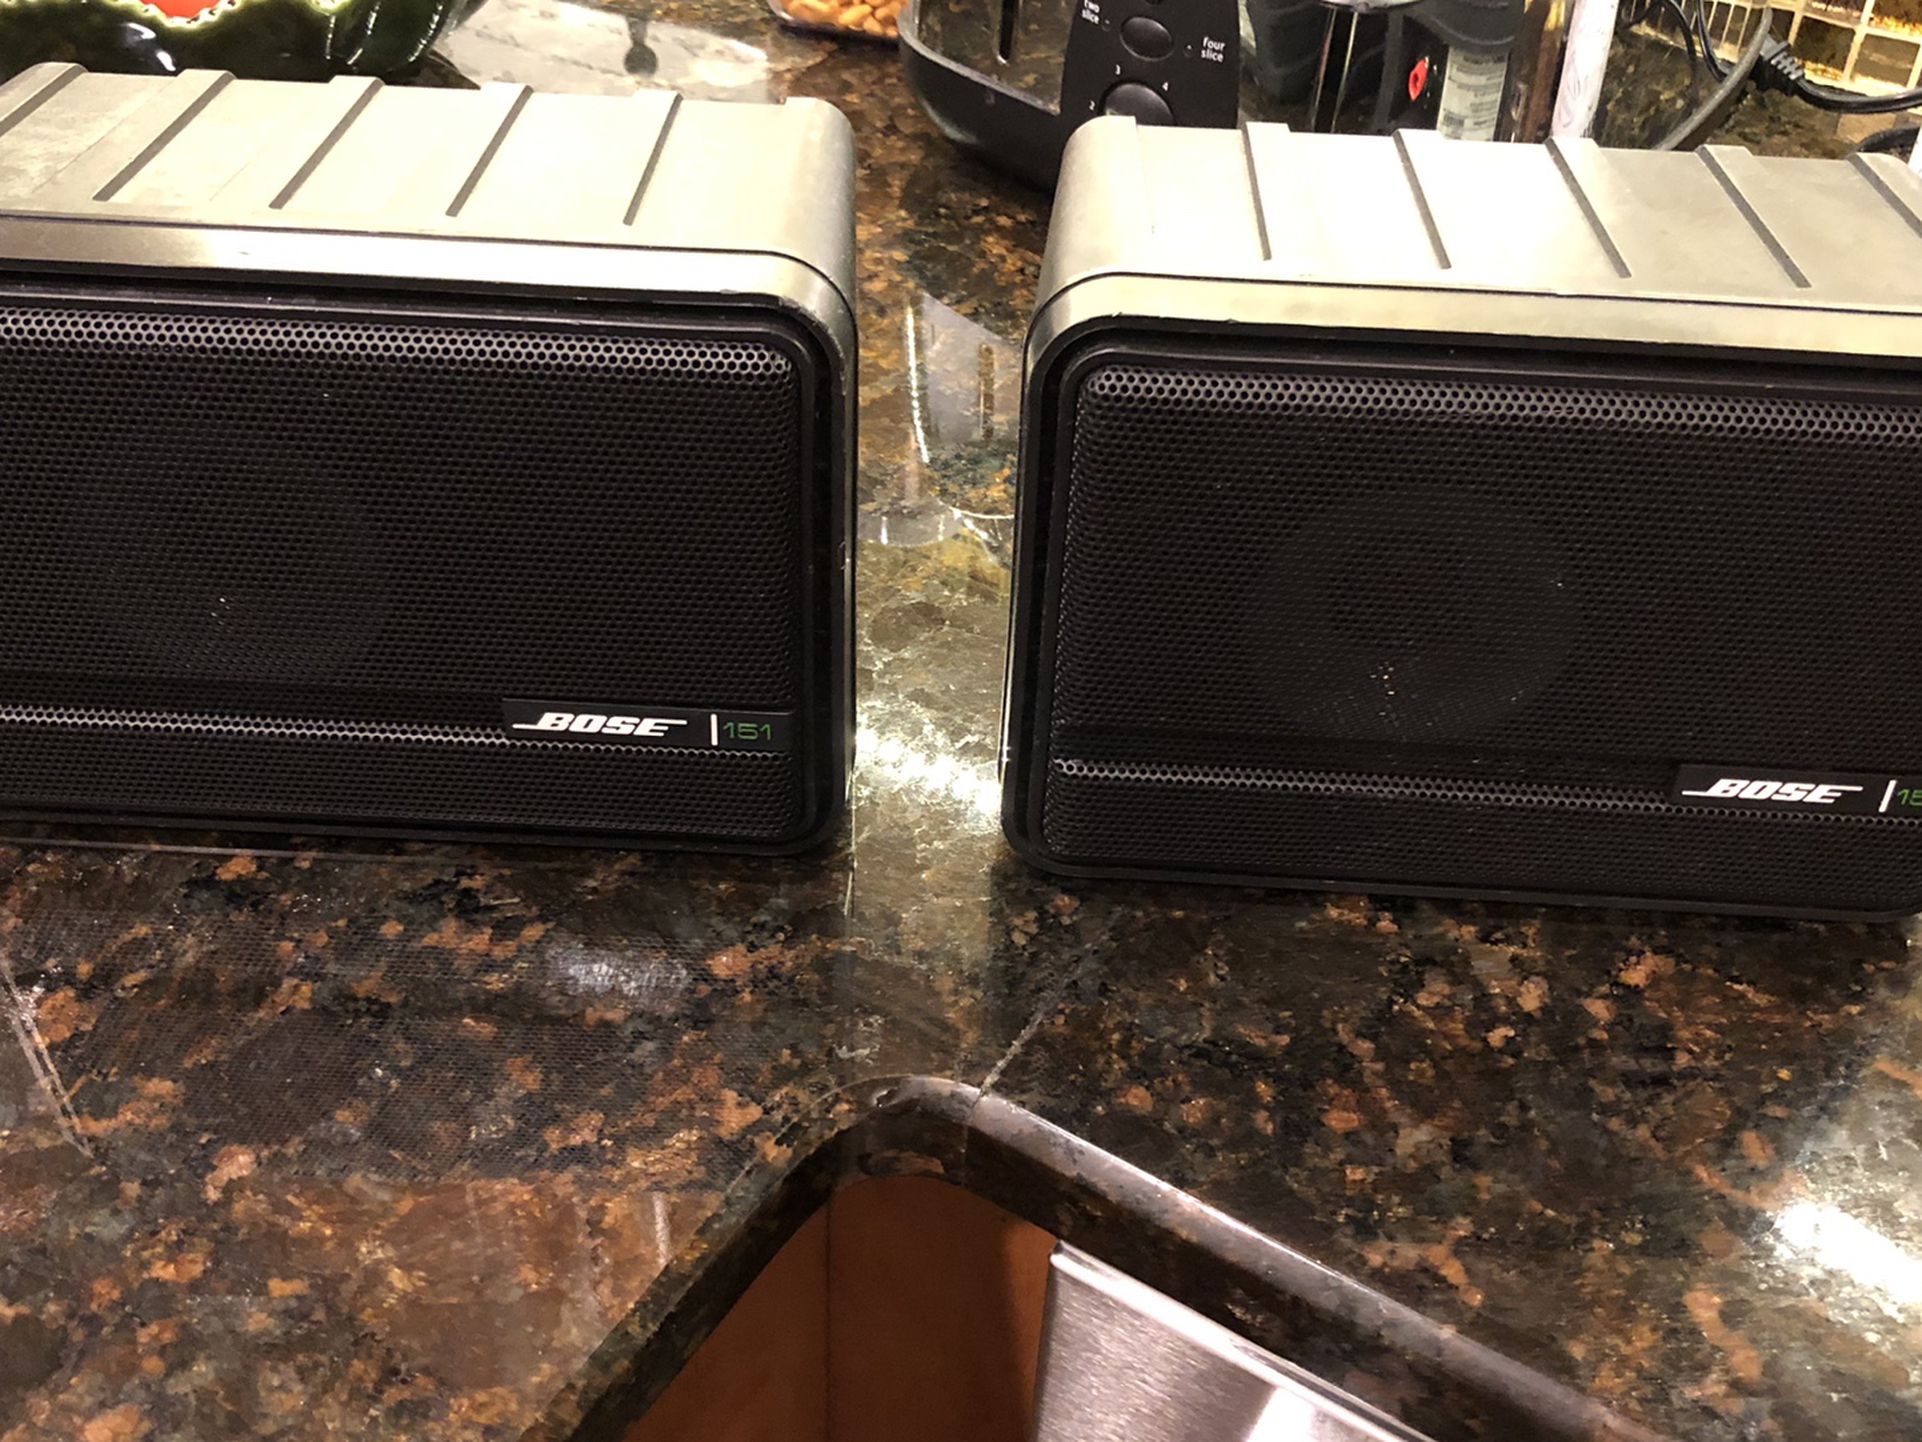 Bose 151 Environmental Outdoor Speakers (Black)